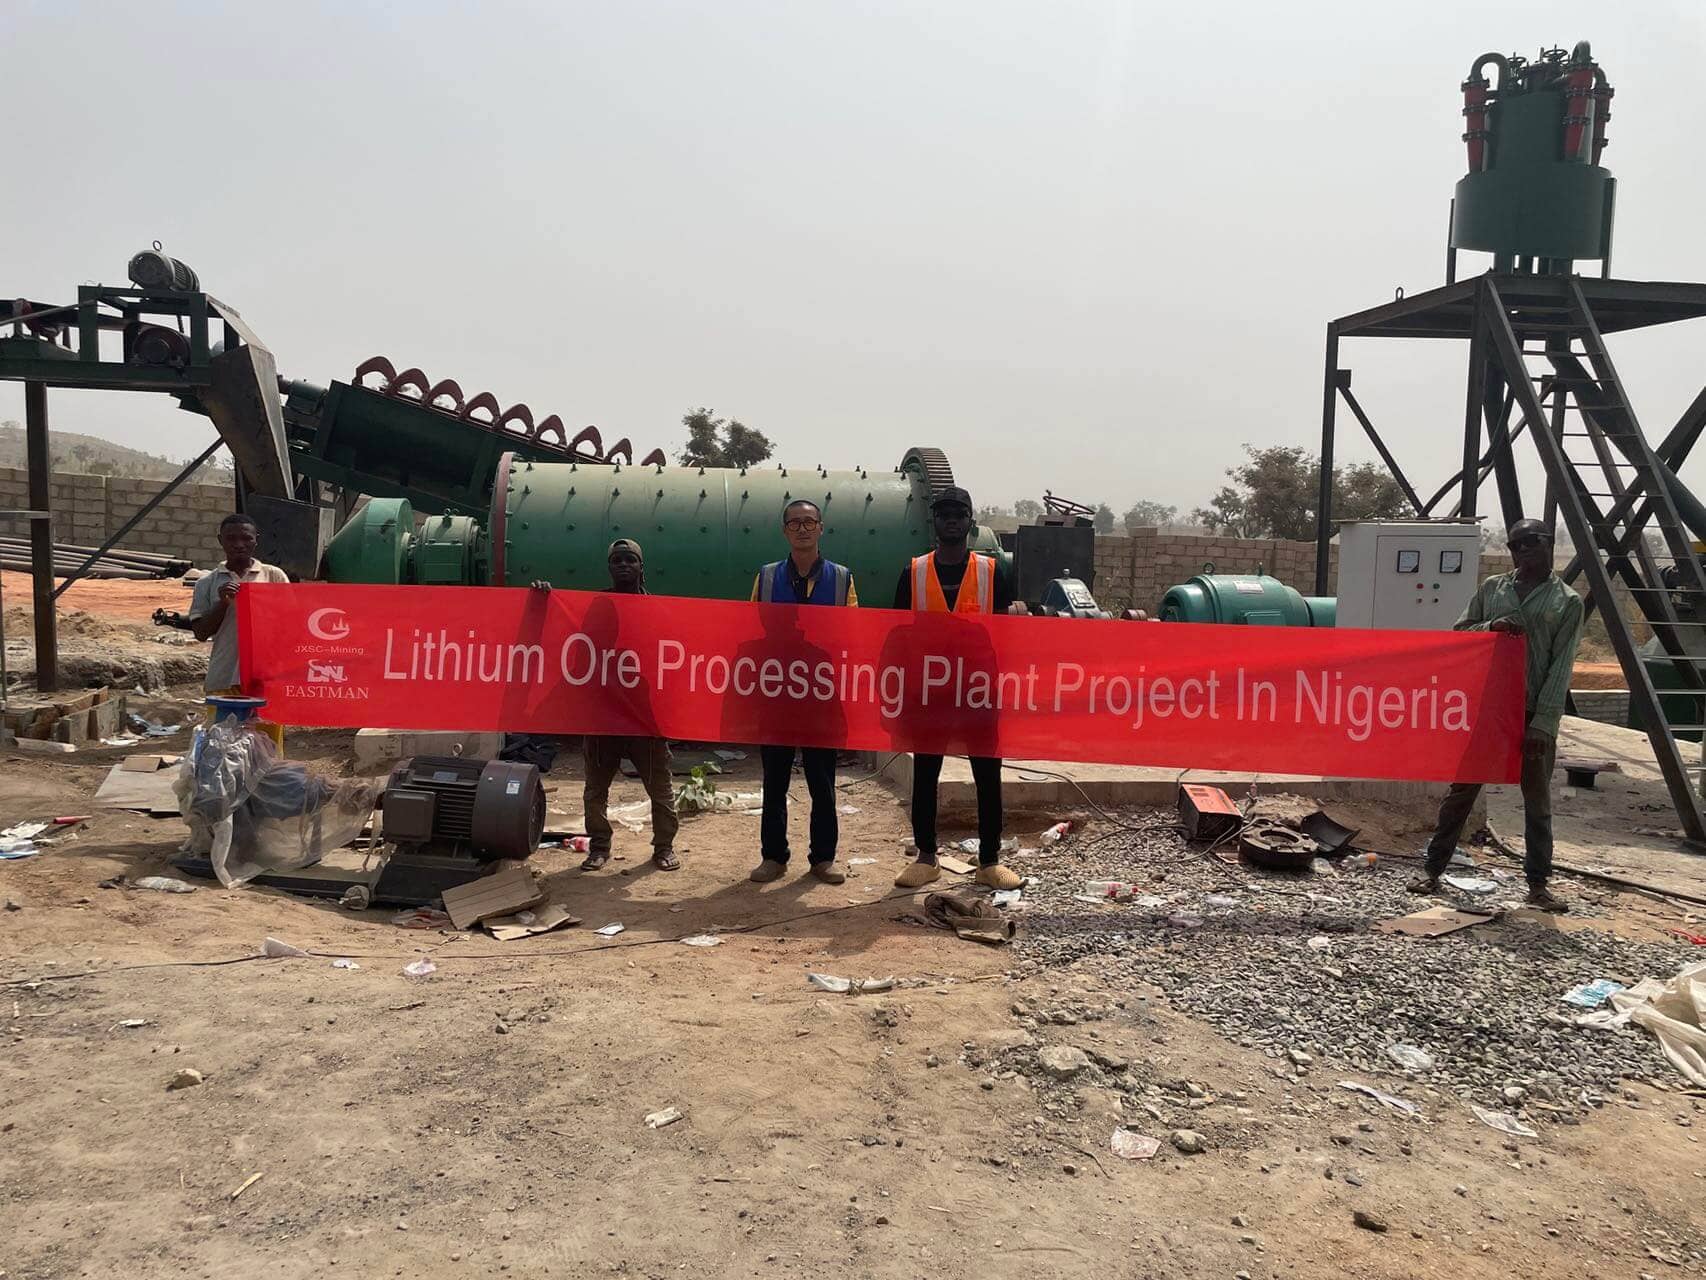 Fábrica de processamento de lítio de 120 TPD na Nigéria